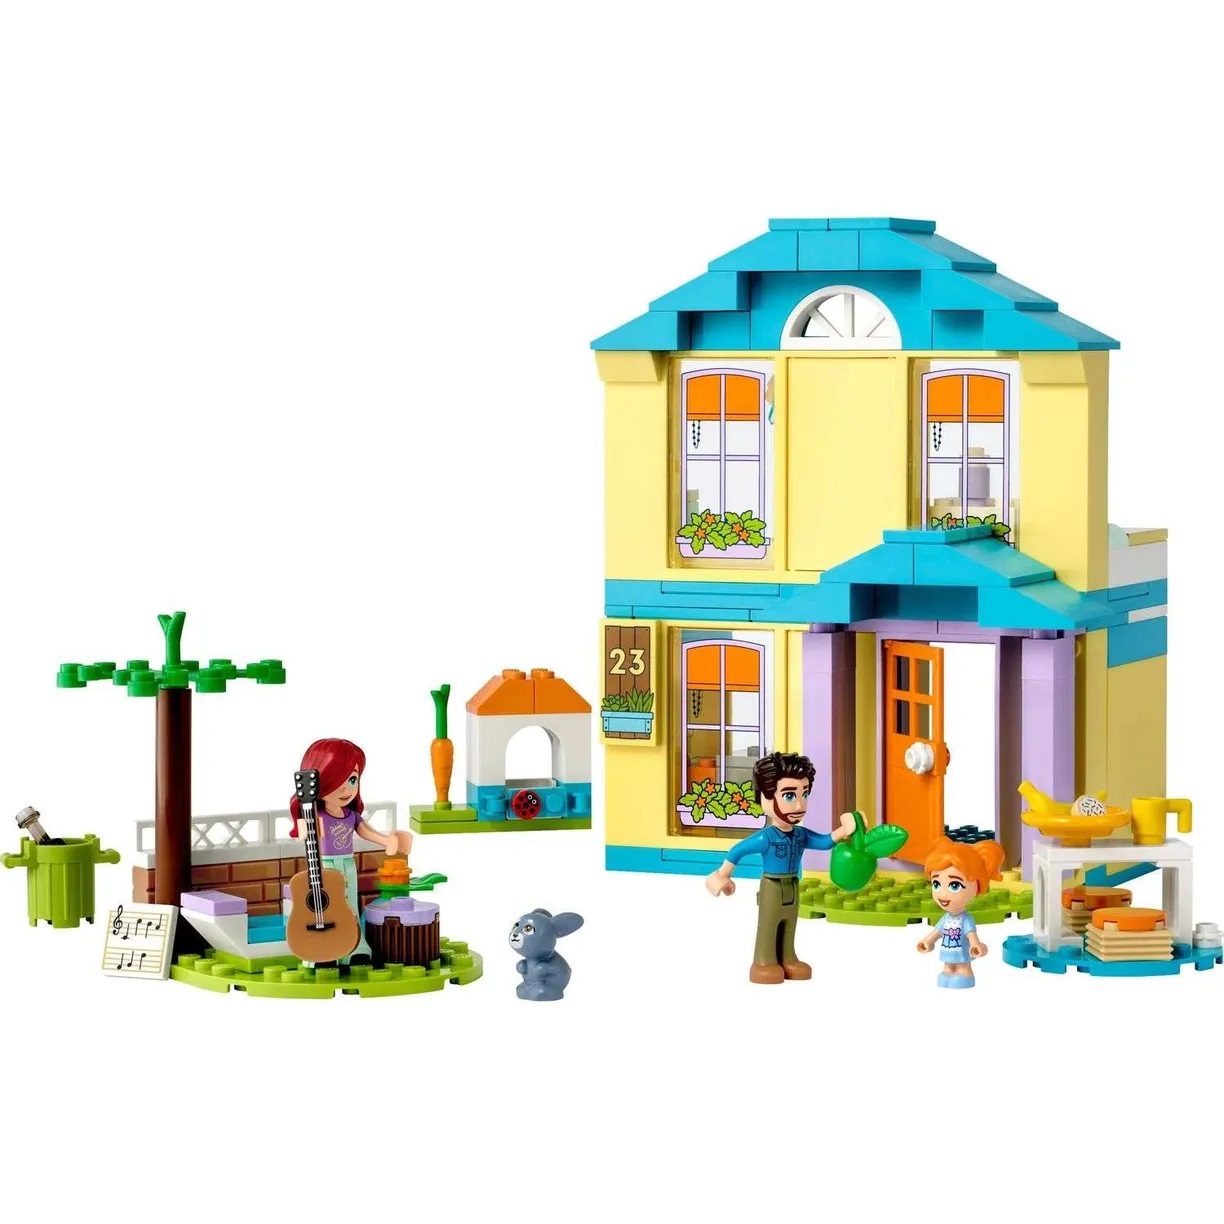 Lego Friends 41724 Дом Пейсли